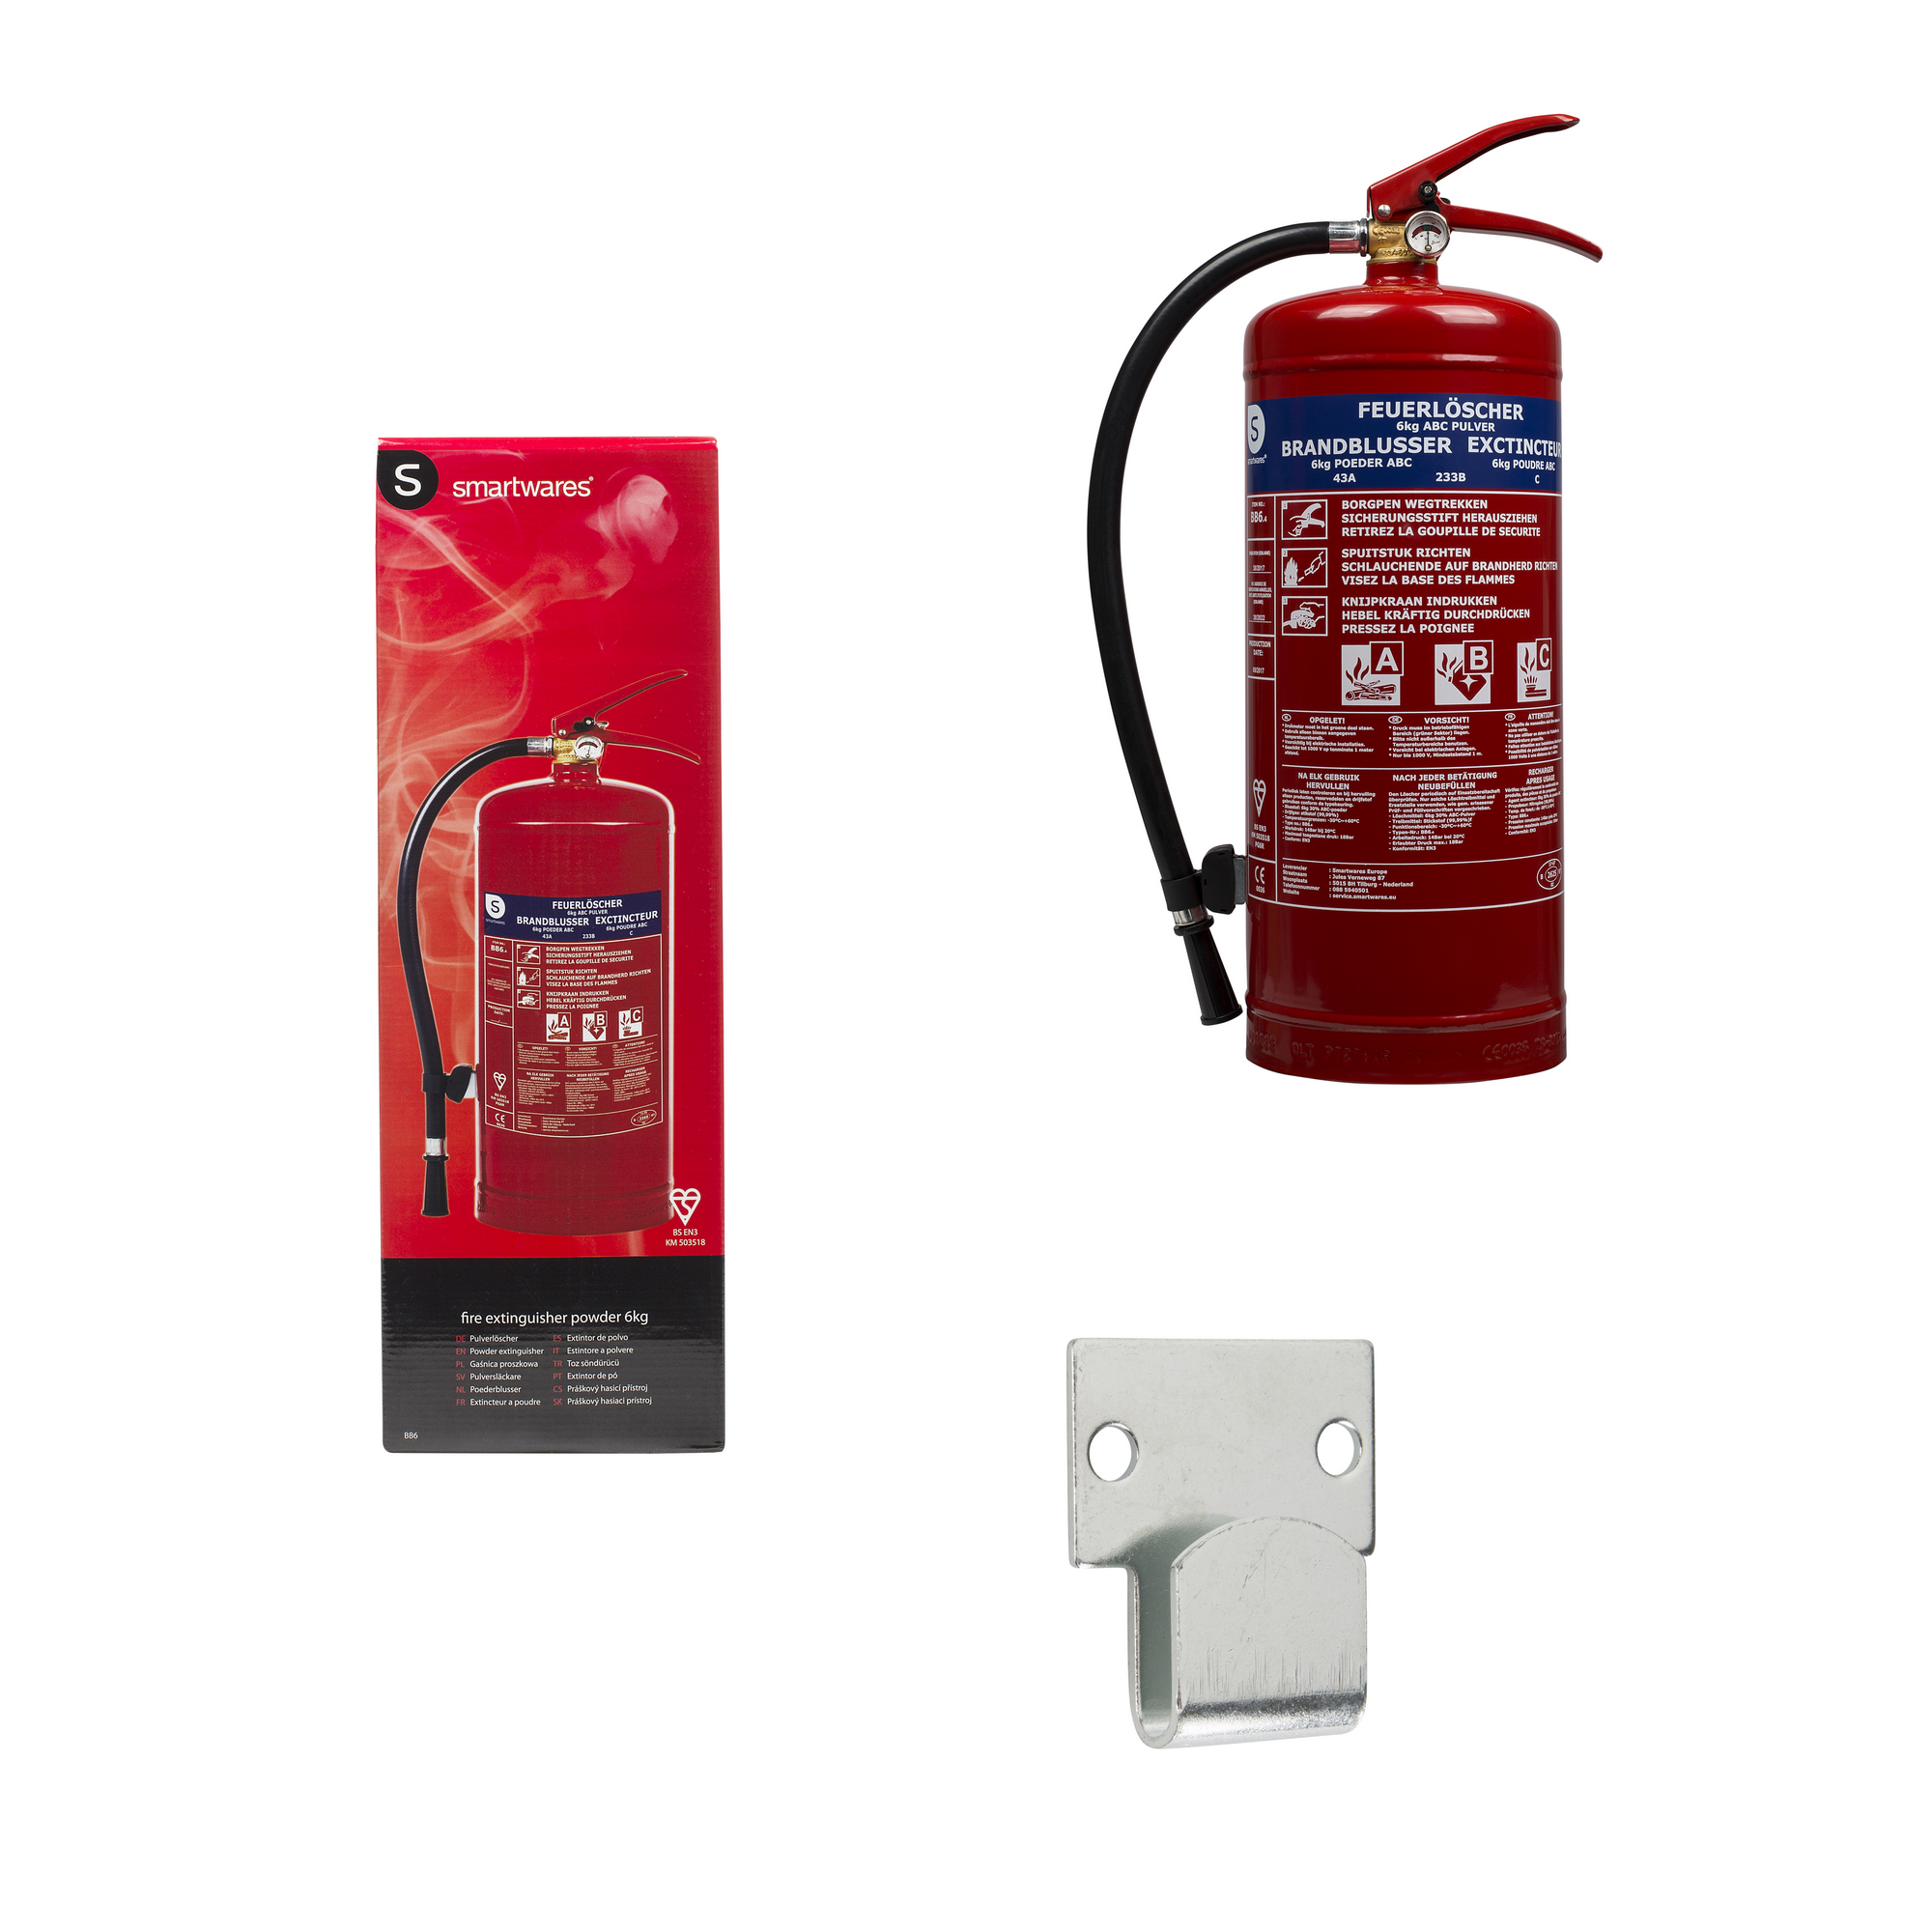 Feuerlöscher 6 KG Pulver inkl. Wandhalterung, Feuerwehr, Ausrüstung, Unsere Produkte